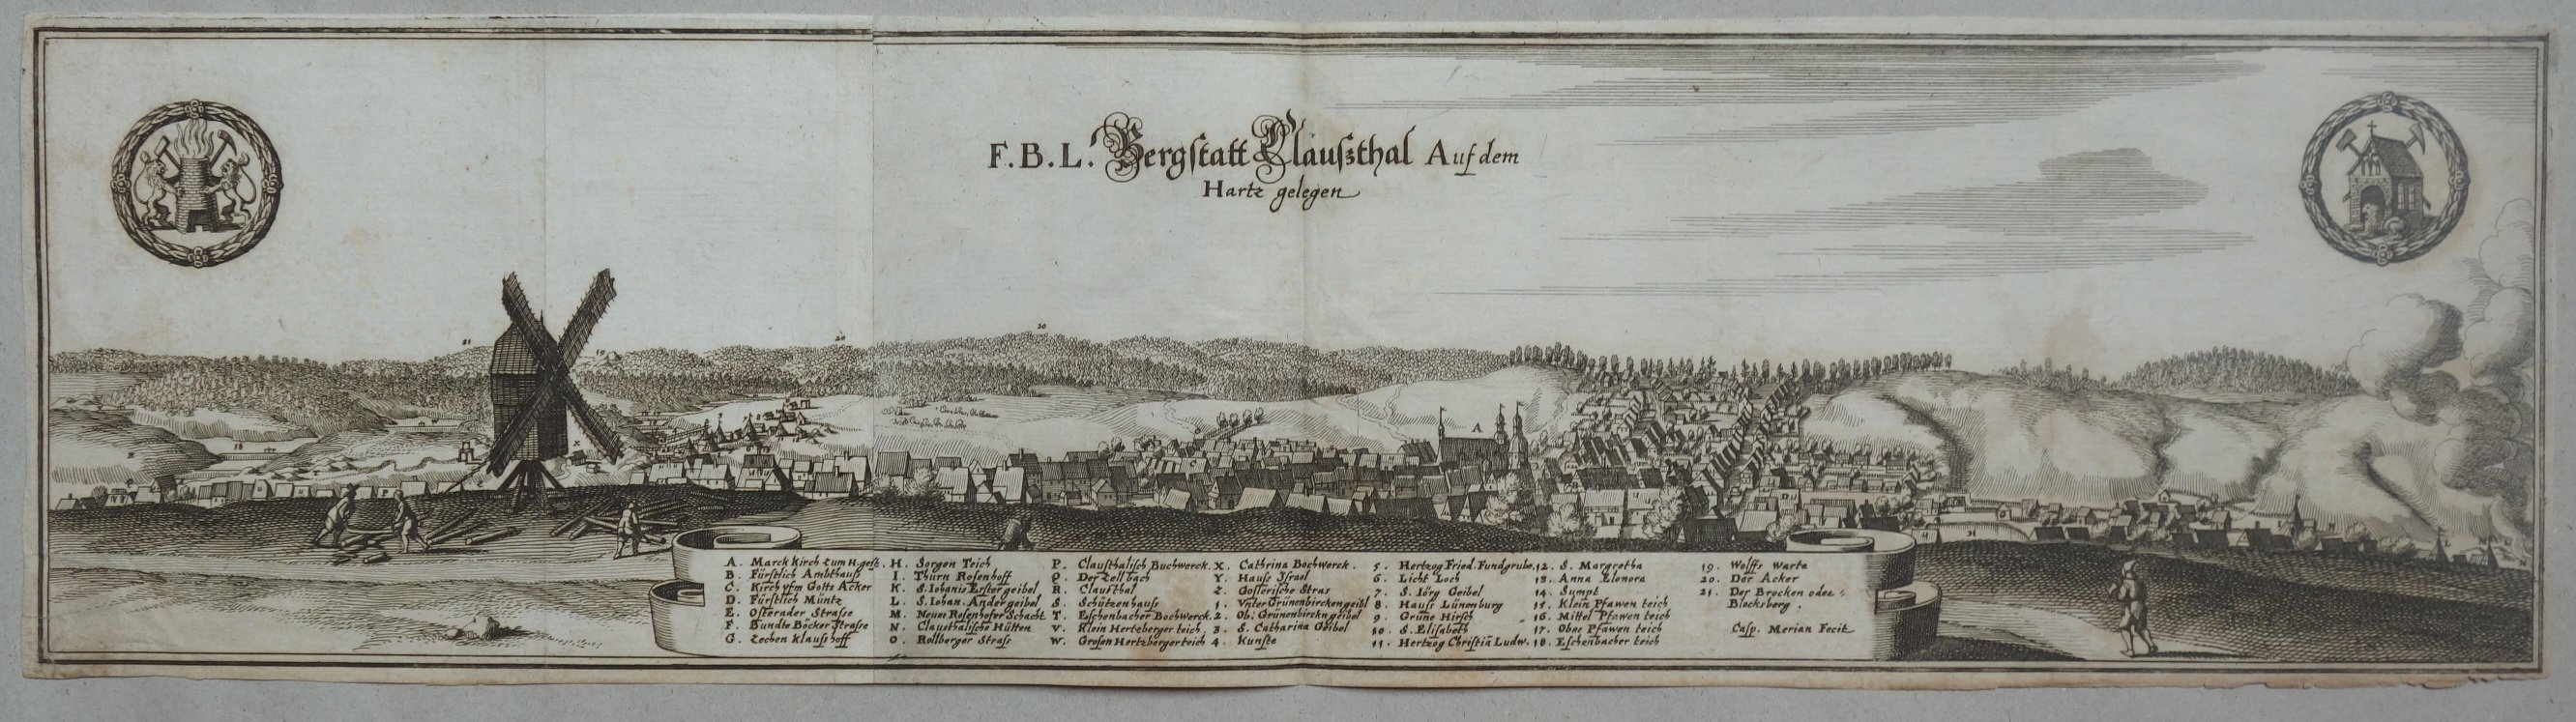 Clausthal: Stadt und Umgebung, 1654 (aus: Merian "Topographia") (Schloß Wernigerode GmbH RR-F)